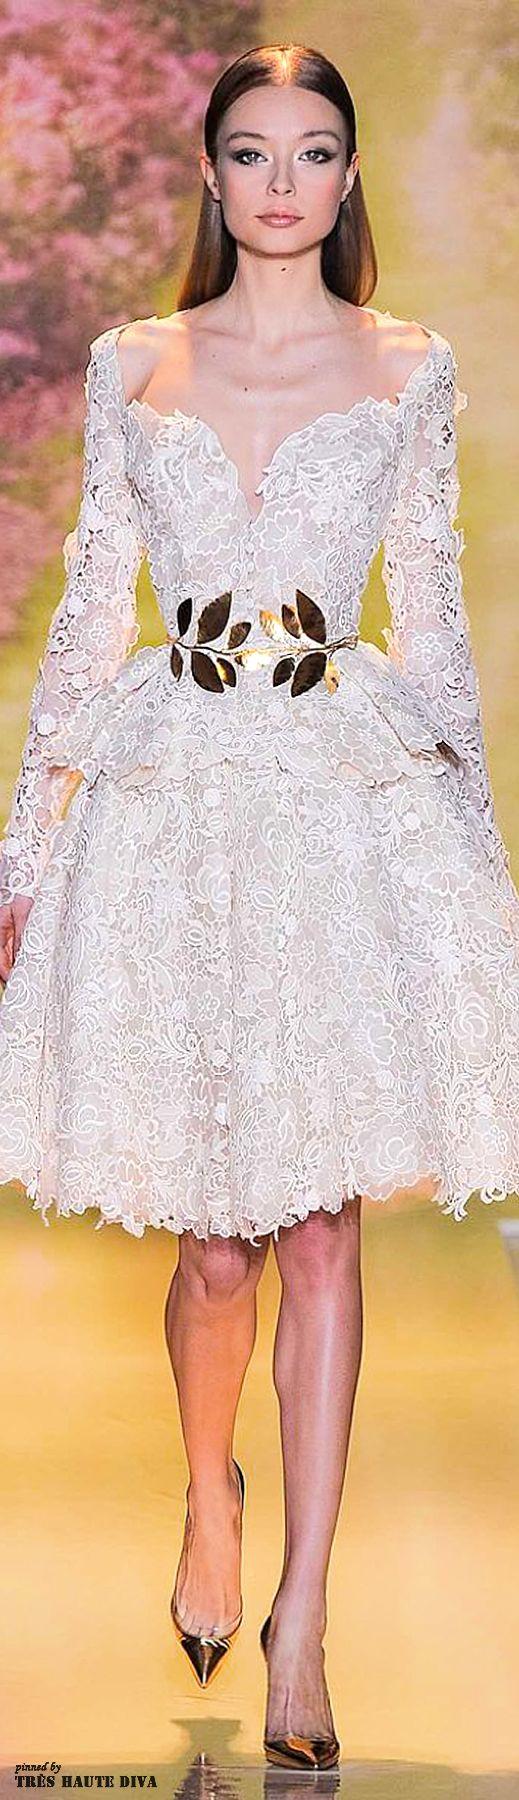 زفاف - زهير مراد ربيع 2014 كوتور